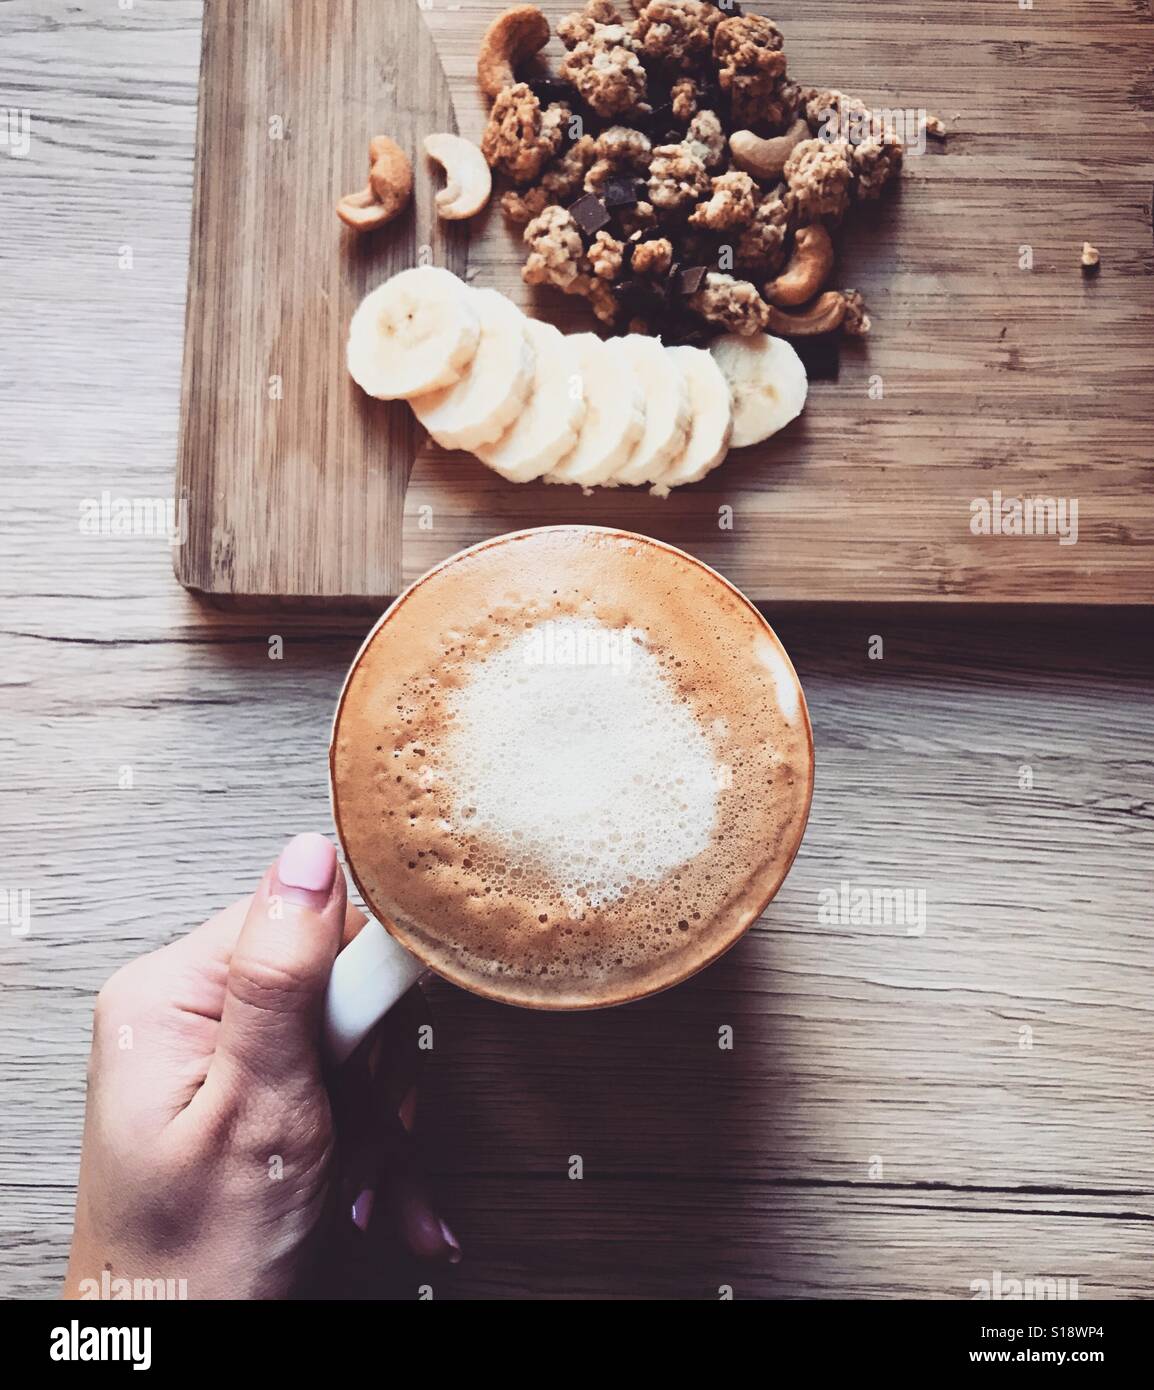 Kaffee am Morgen. Banane und Getreide auf einer Holzplatte und eine Tasse heißen Kaffee. Frühstückstisch Stockfoto